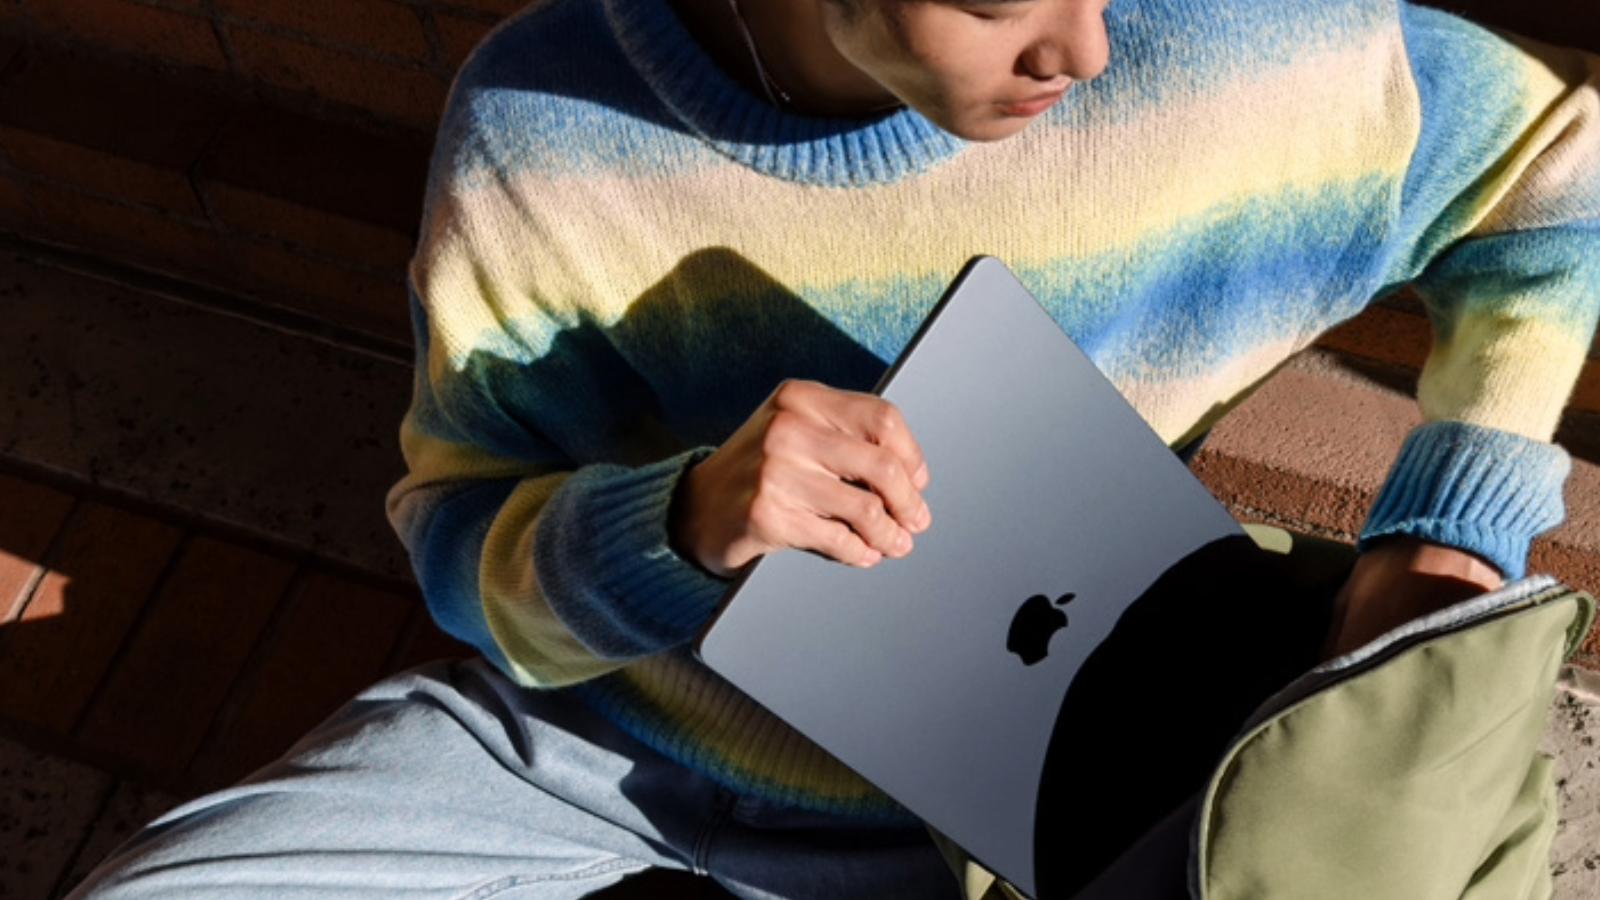 Apple M3 MacBook Air being held by a user